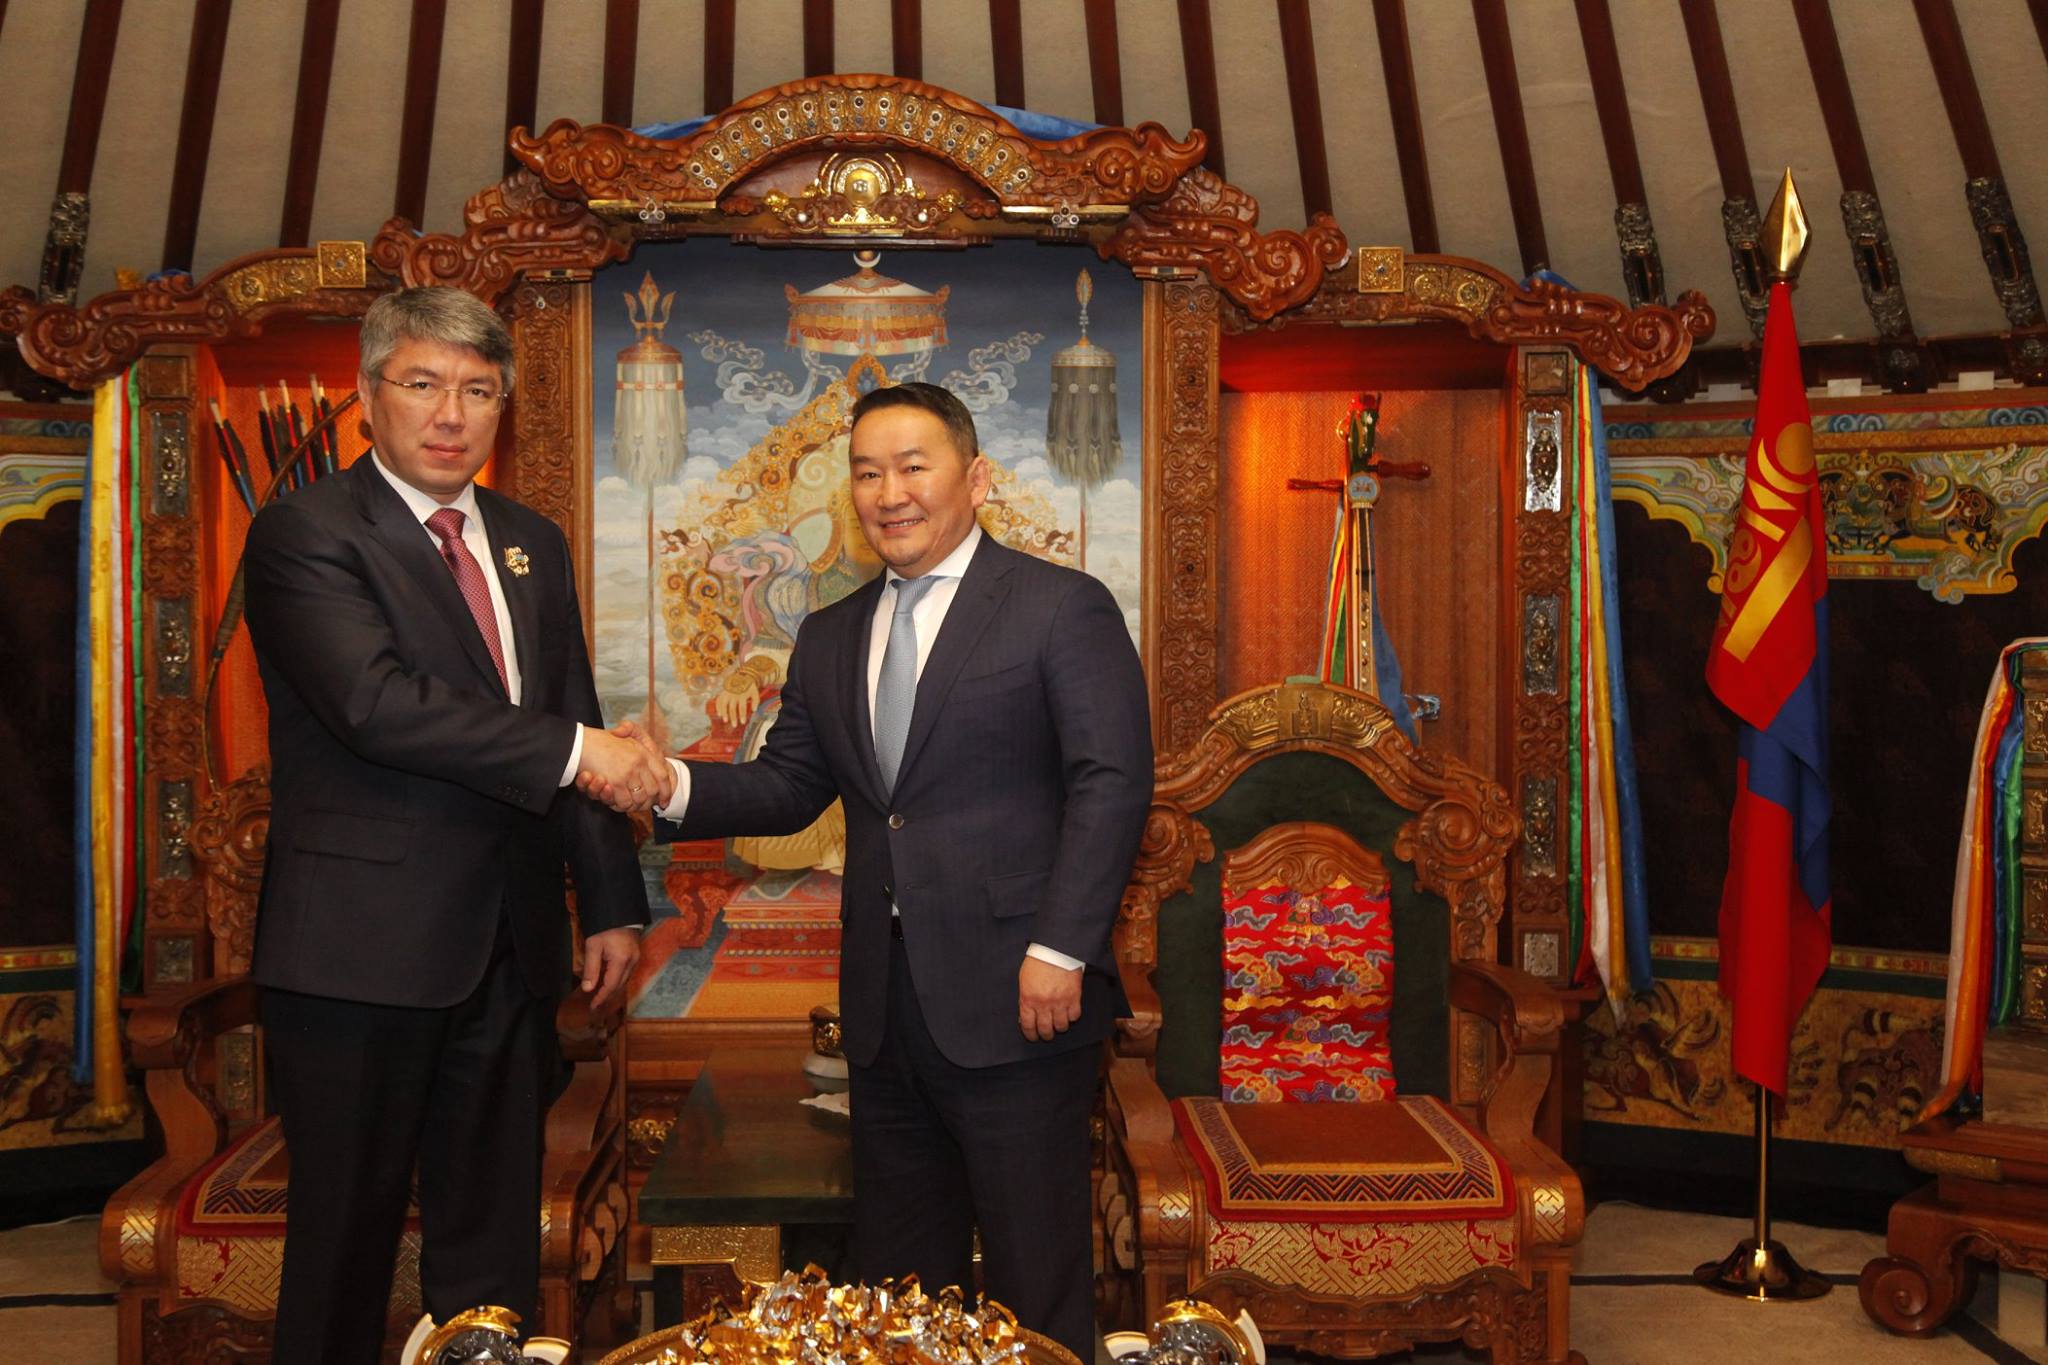 "Мы планируем развитие экспорта медицинских услуг ближайшим соседям, в том числе гражданам Монголии"